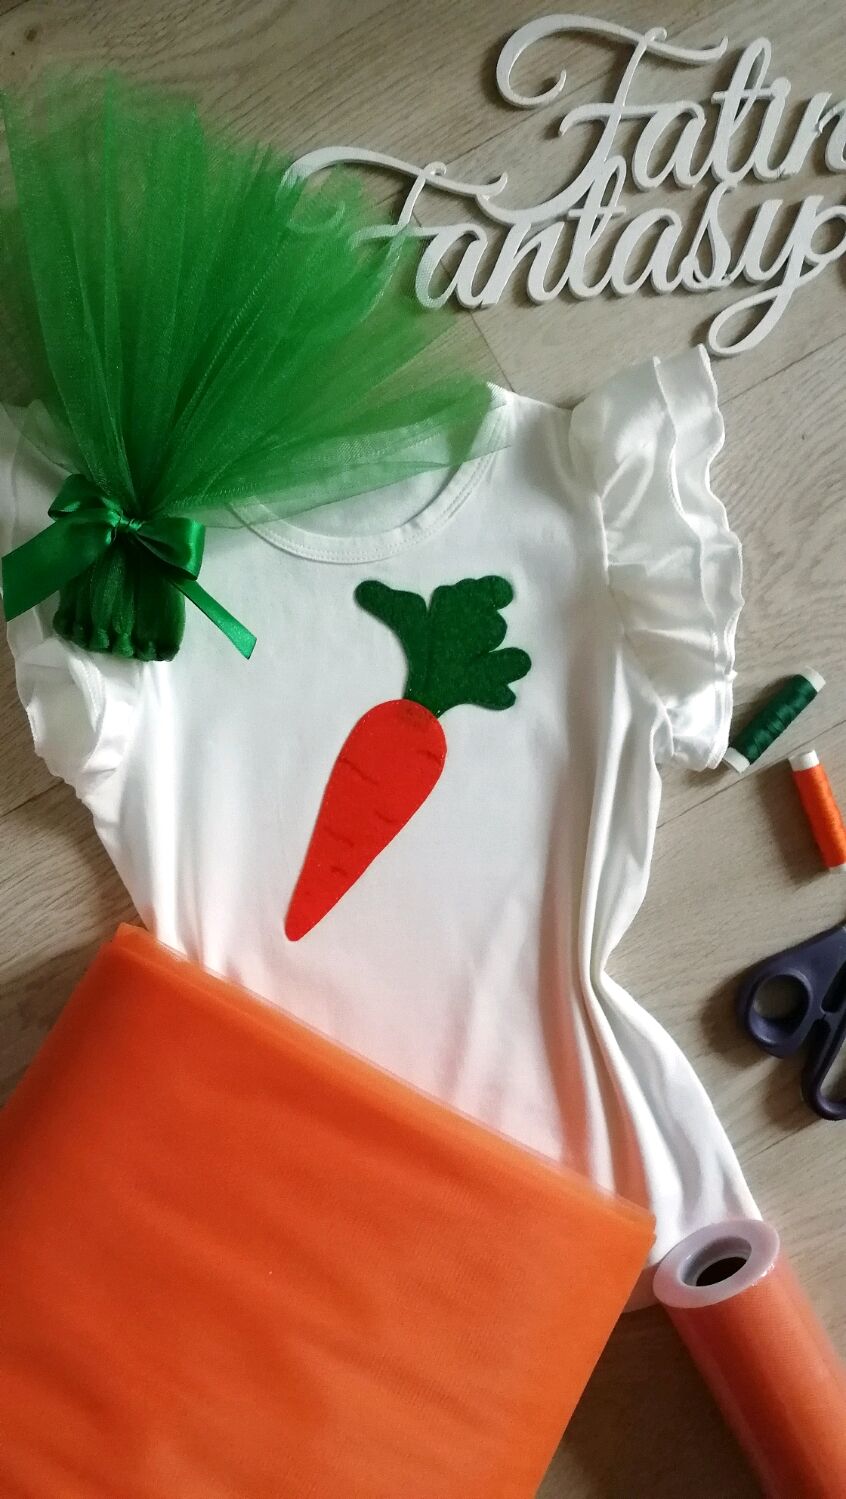 Карнавальные костюмы для детей: овощи, фрукты, грибы, ягоды